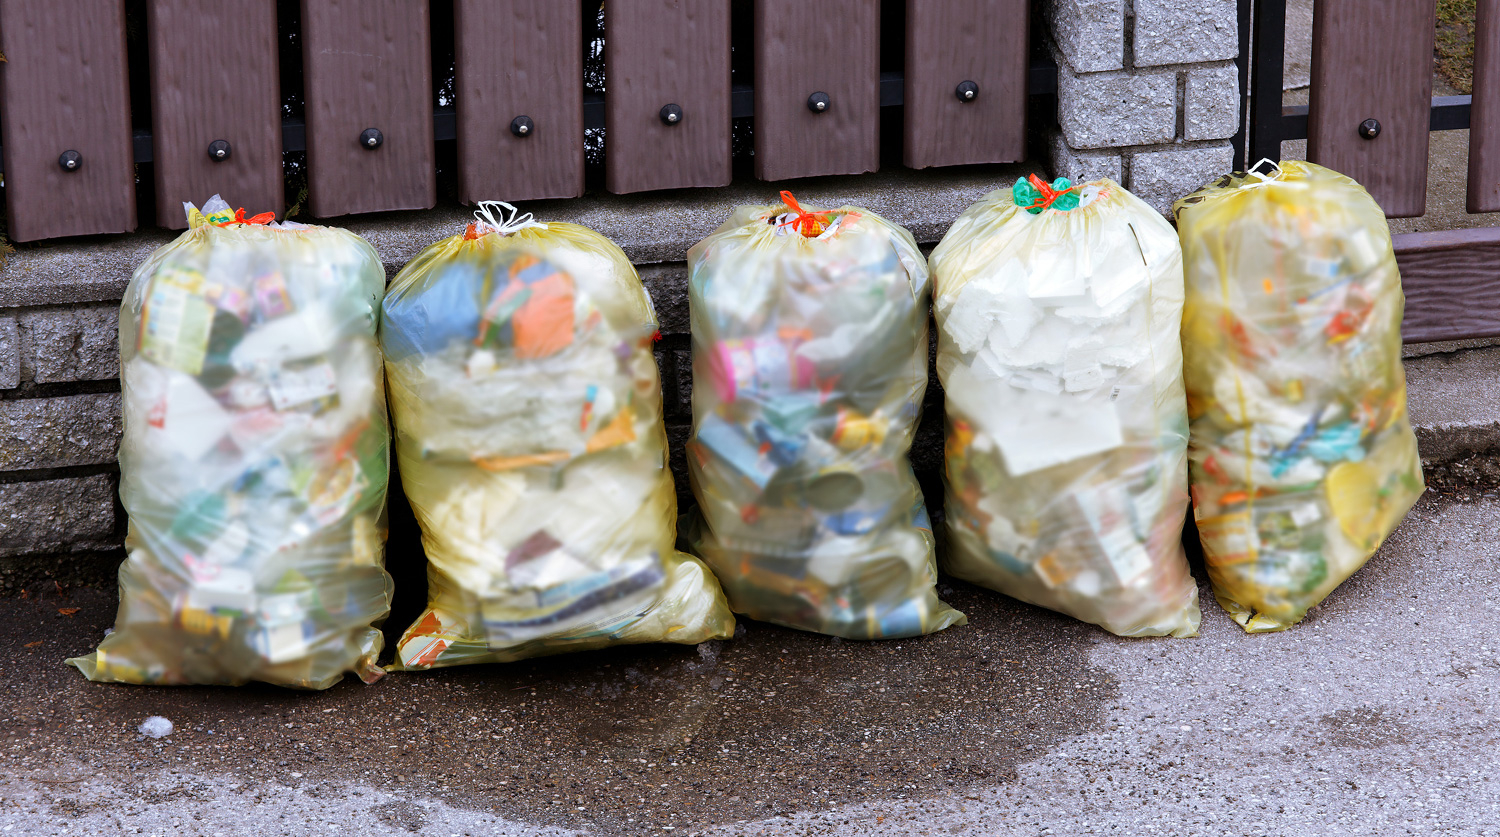 Власти решили сократить расходы на утилизацию мусора в два раза в 2023-2024 годах